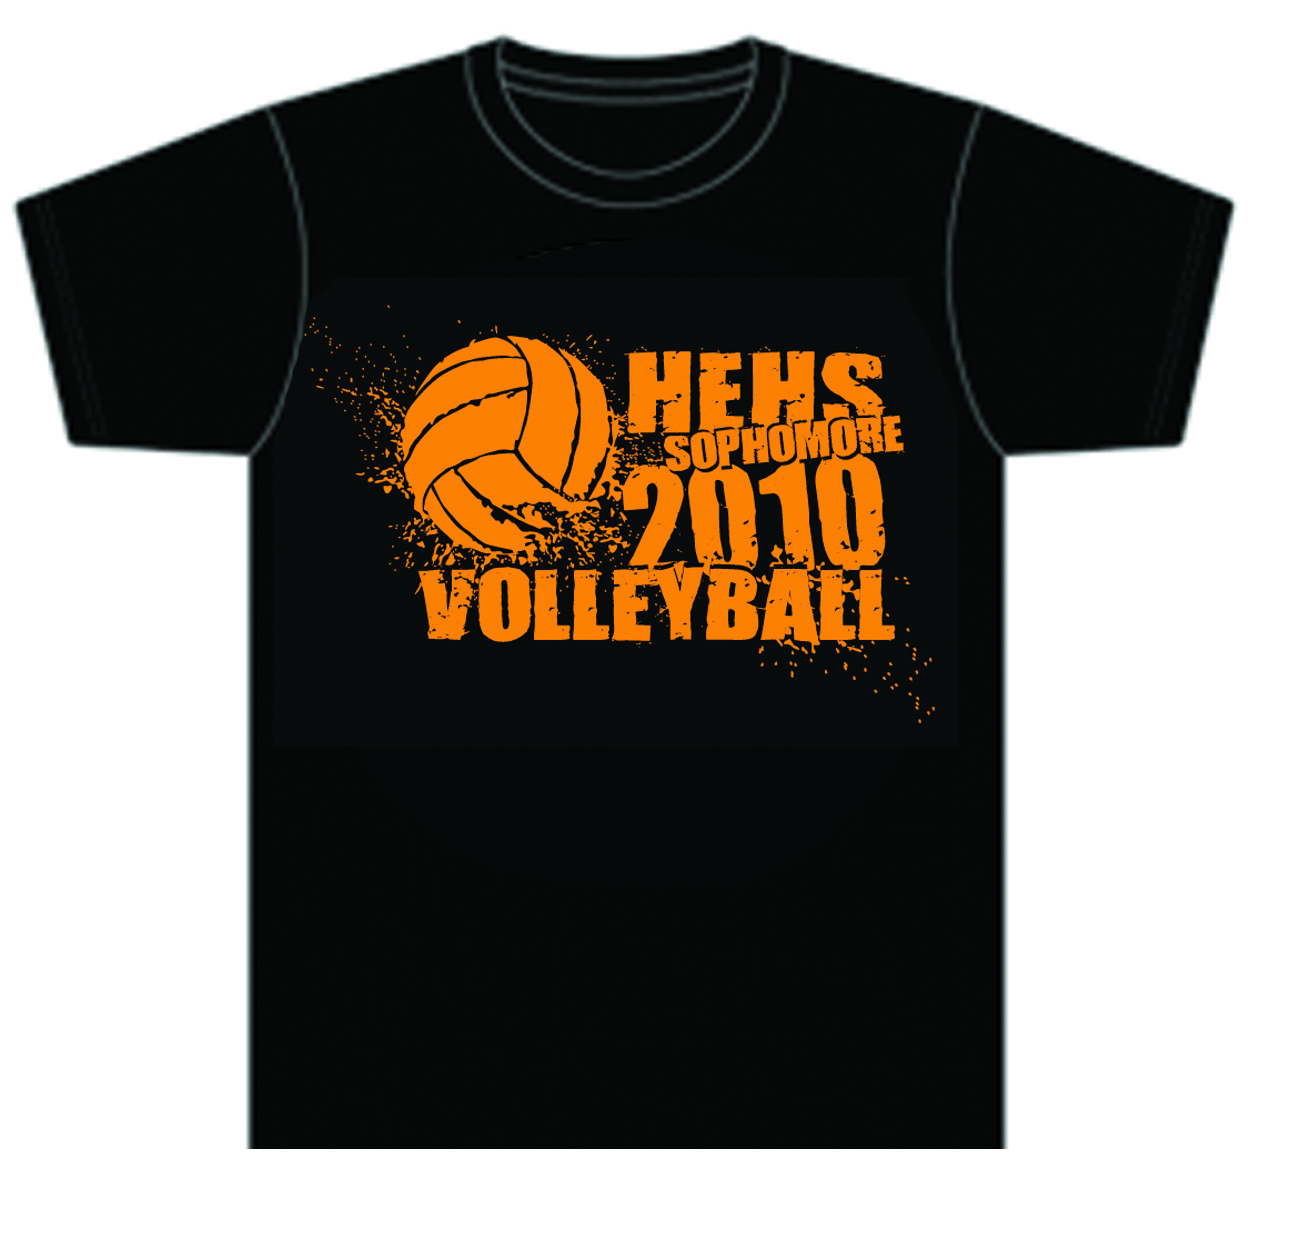 High School Volleyball Shirt Designs